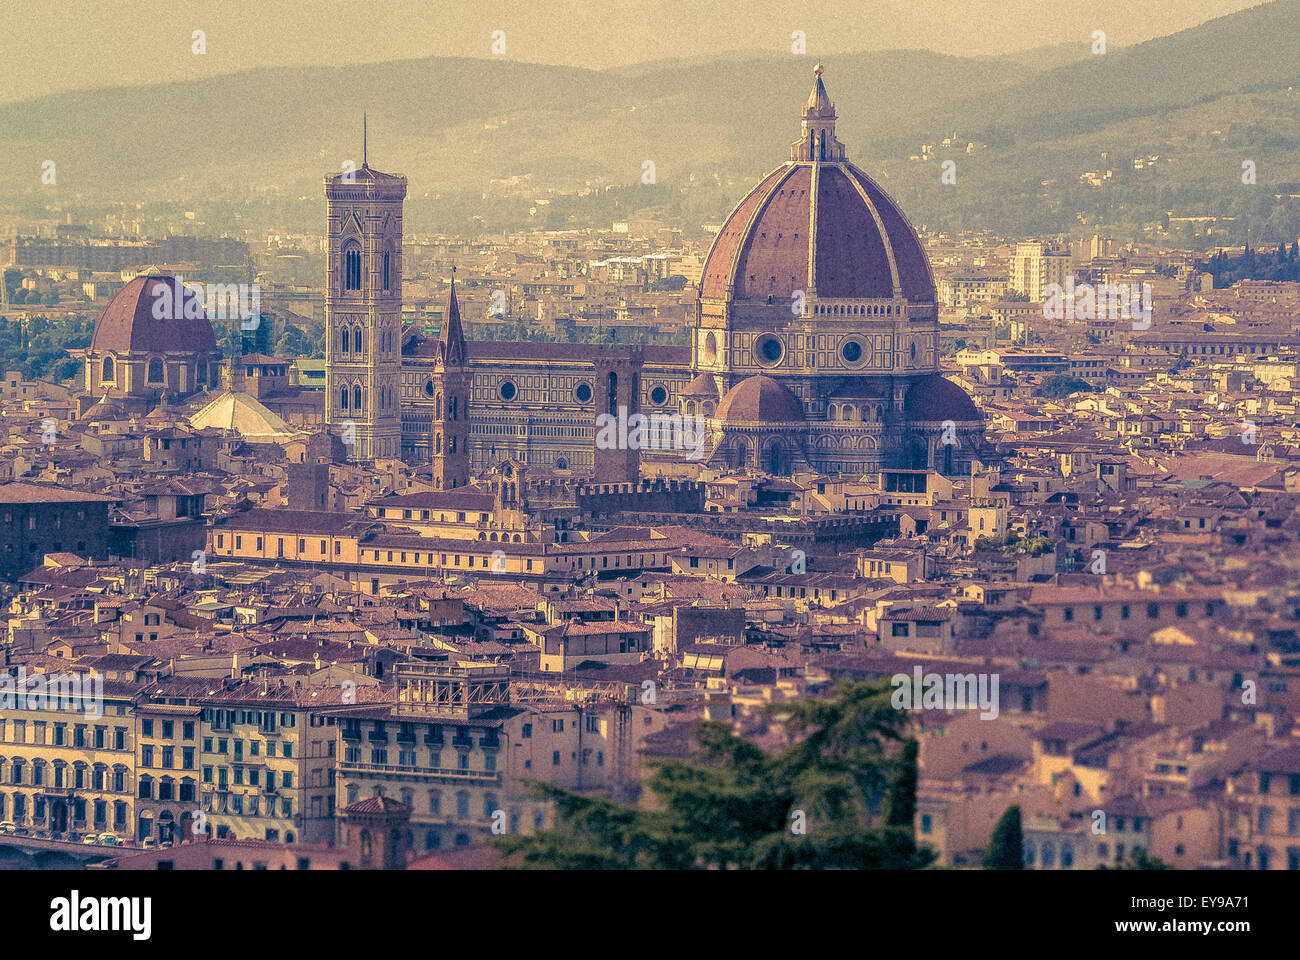 Kathedrale von Florenz oder Dom mit Kuppel, entworfen von Filippo Brunelleschi. Florenz, Italien. Stockfoto